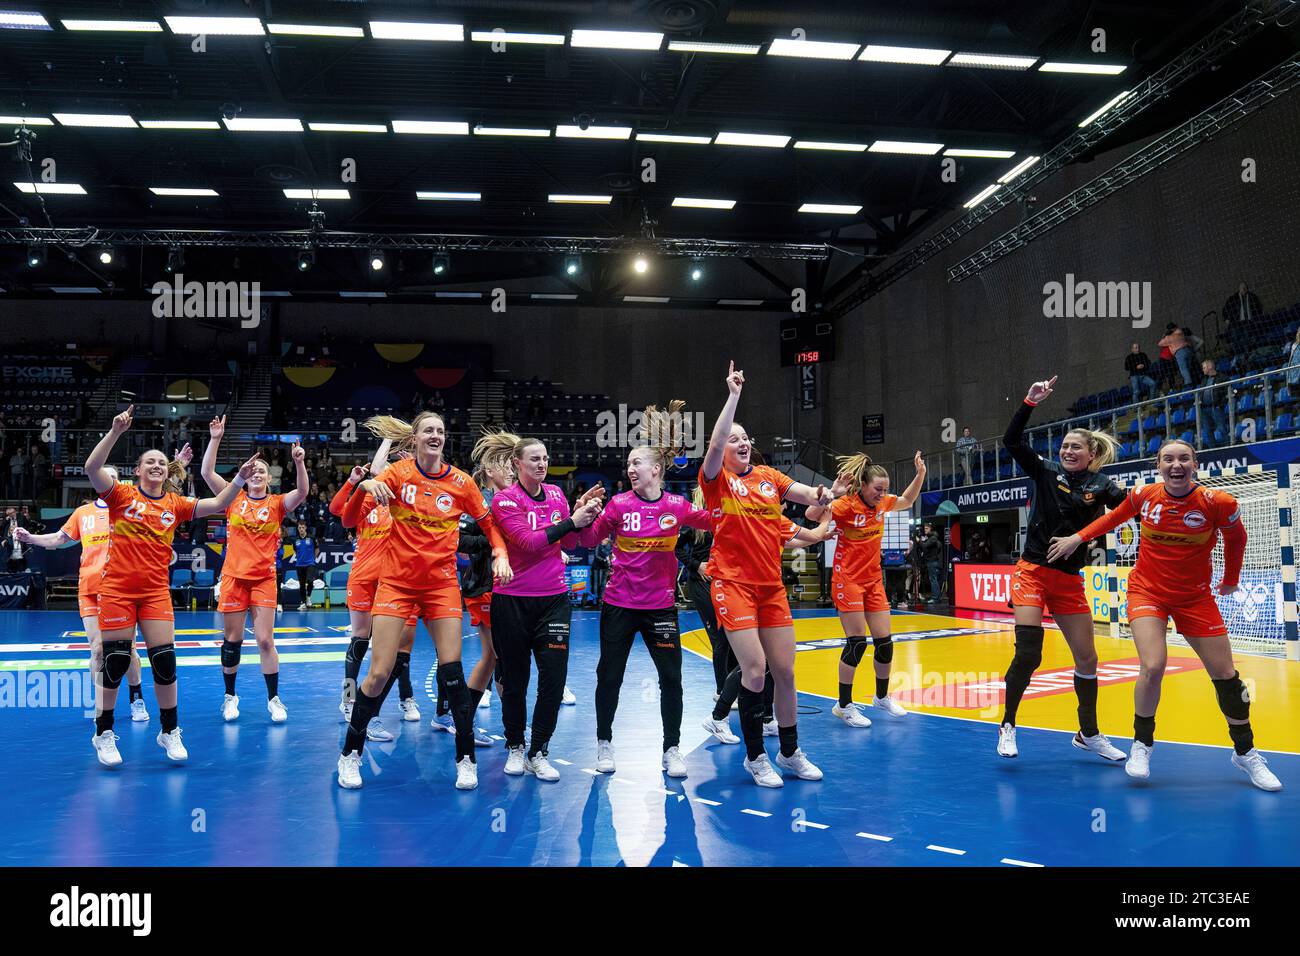 FREDERIKSHAVN - i Paesi Bassi festeggiano la sconfitta della Spagna durante il turno principale del gruppo IV della Coppa del mondo di pallamano nell'Arena Nord. ANP RONALD HOOGENDOORN Foto Stock